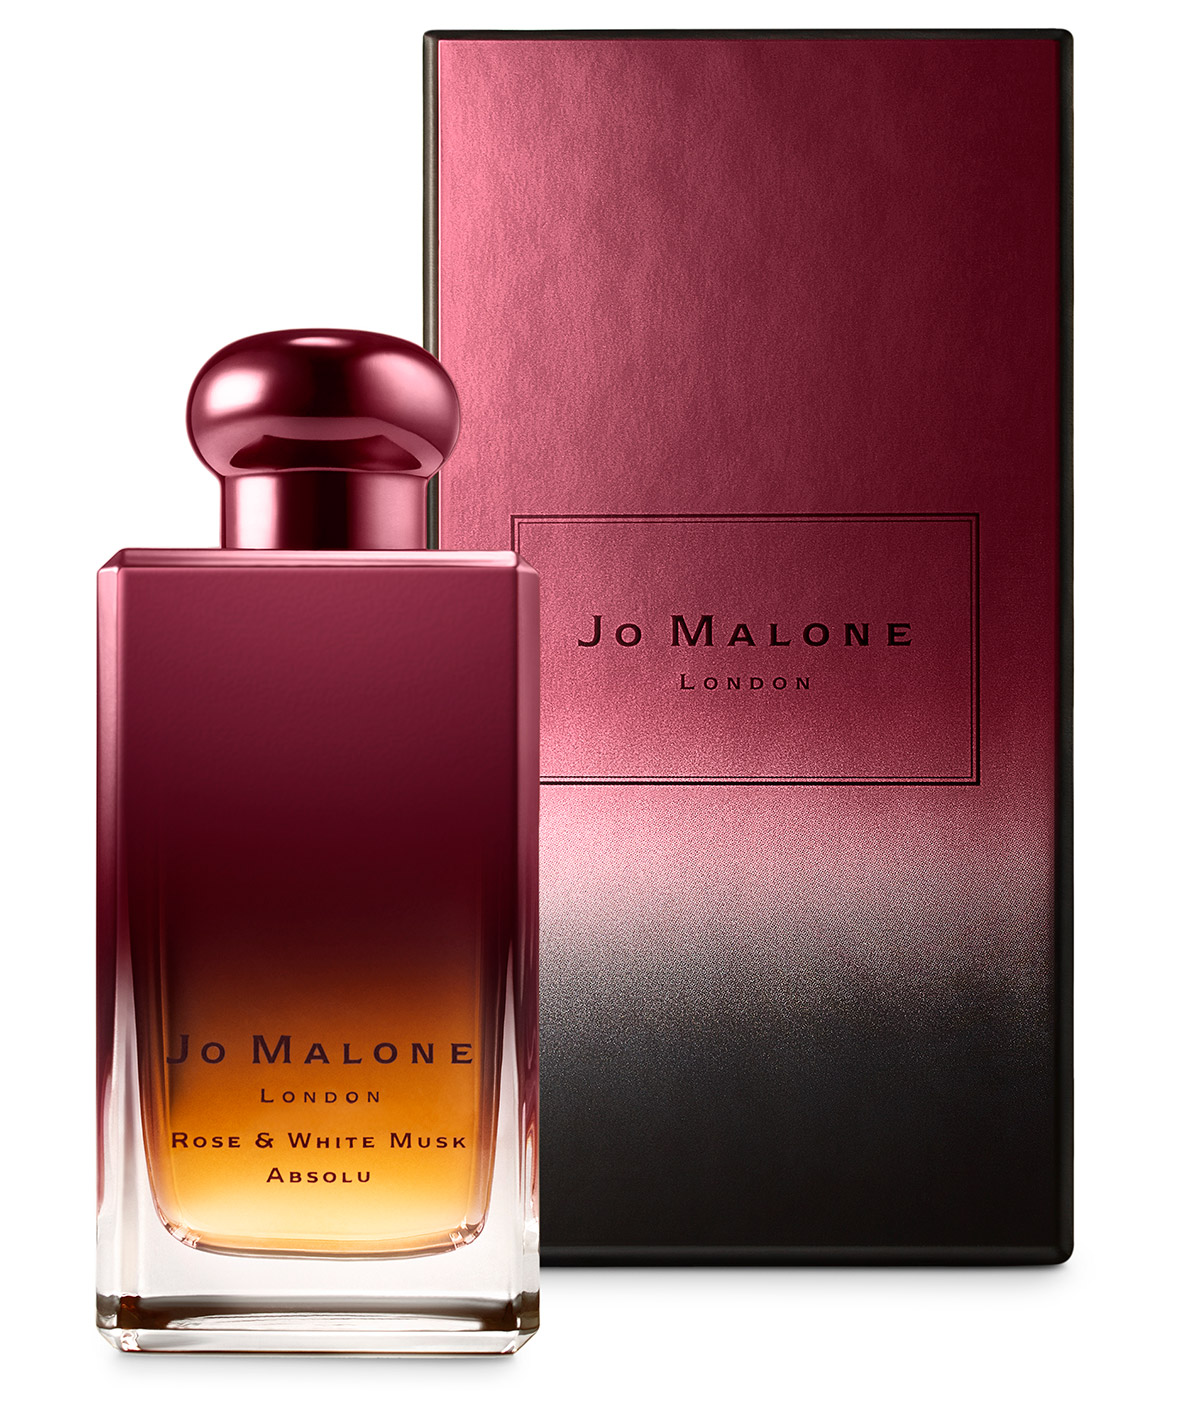 Parfum Jo Malone - Homecare24